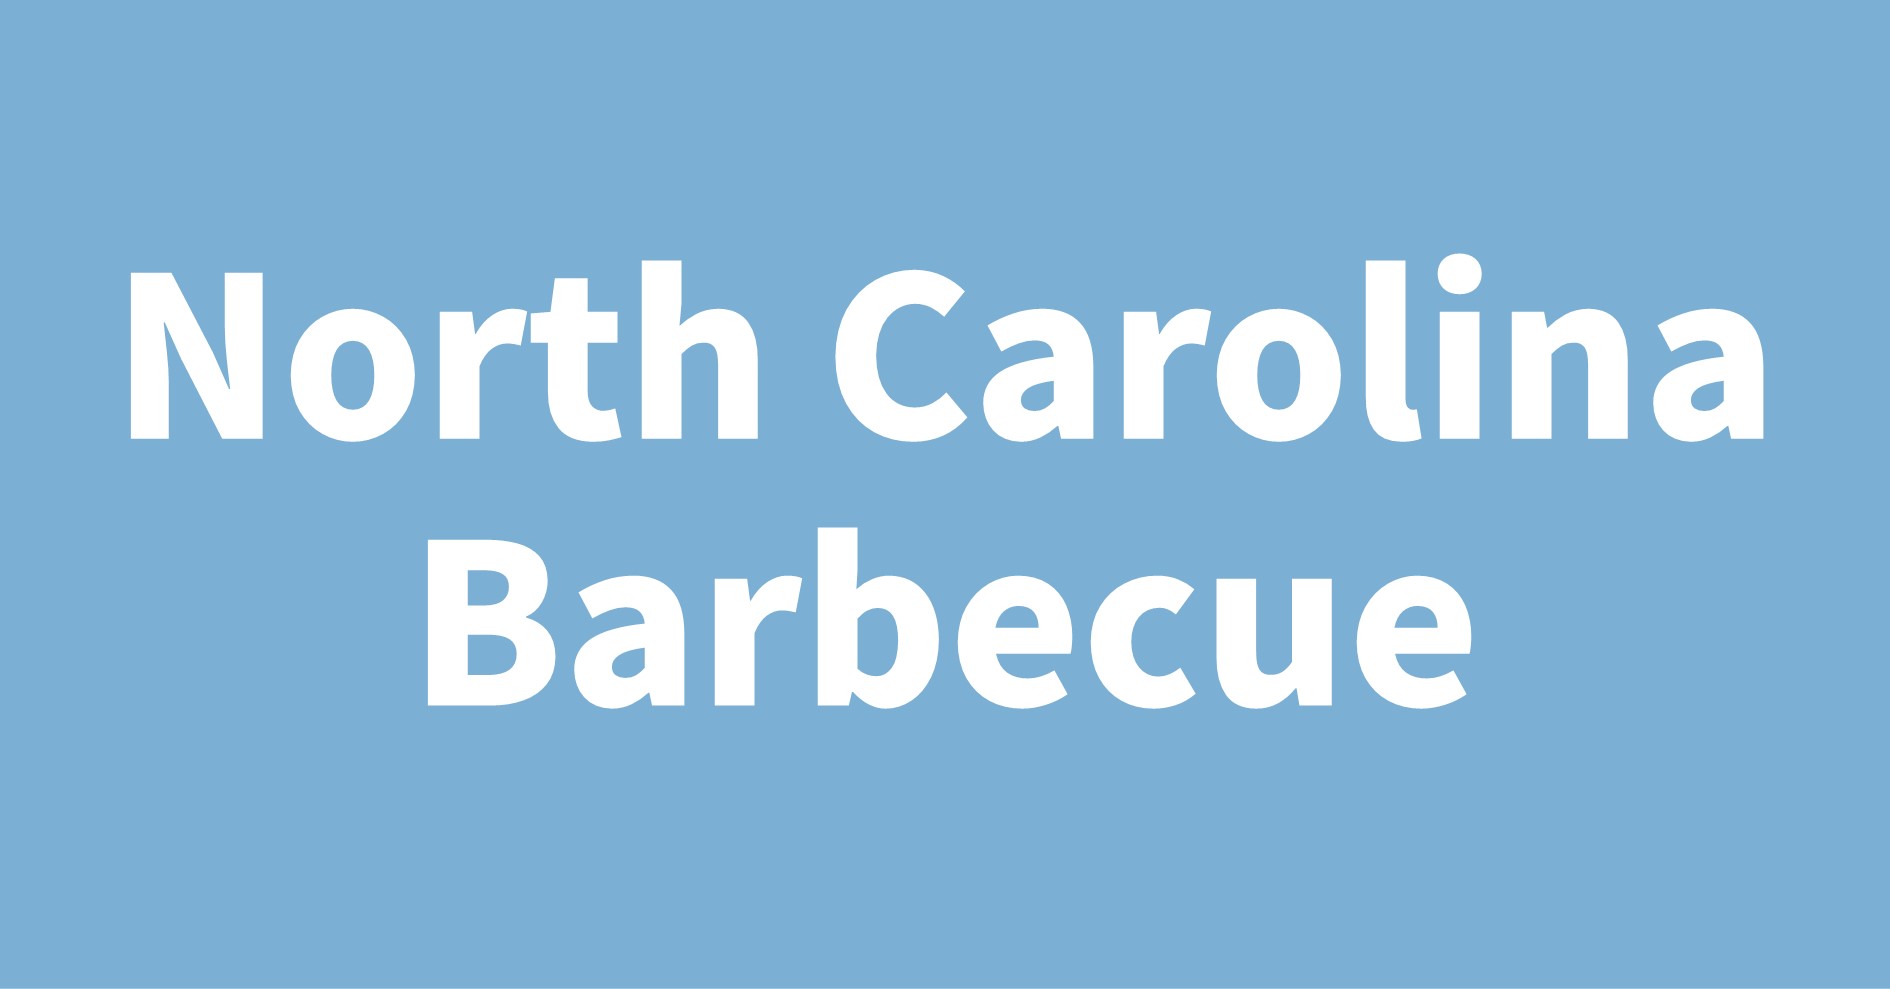 North Carolina Barbecue